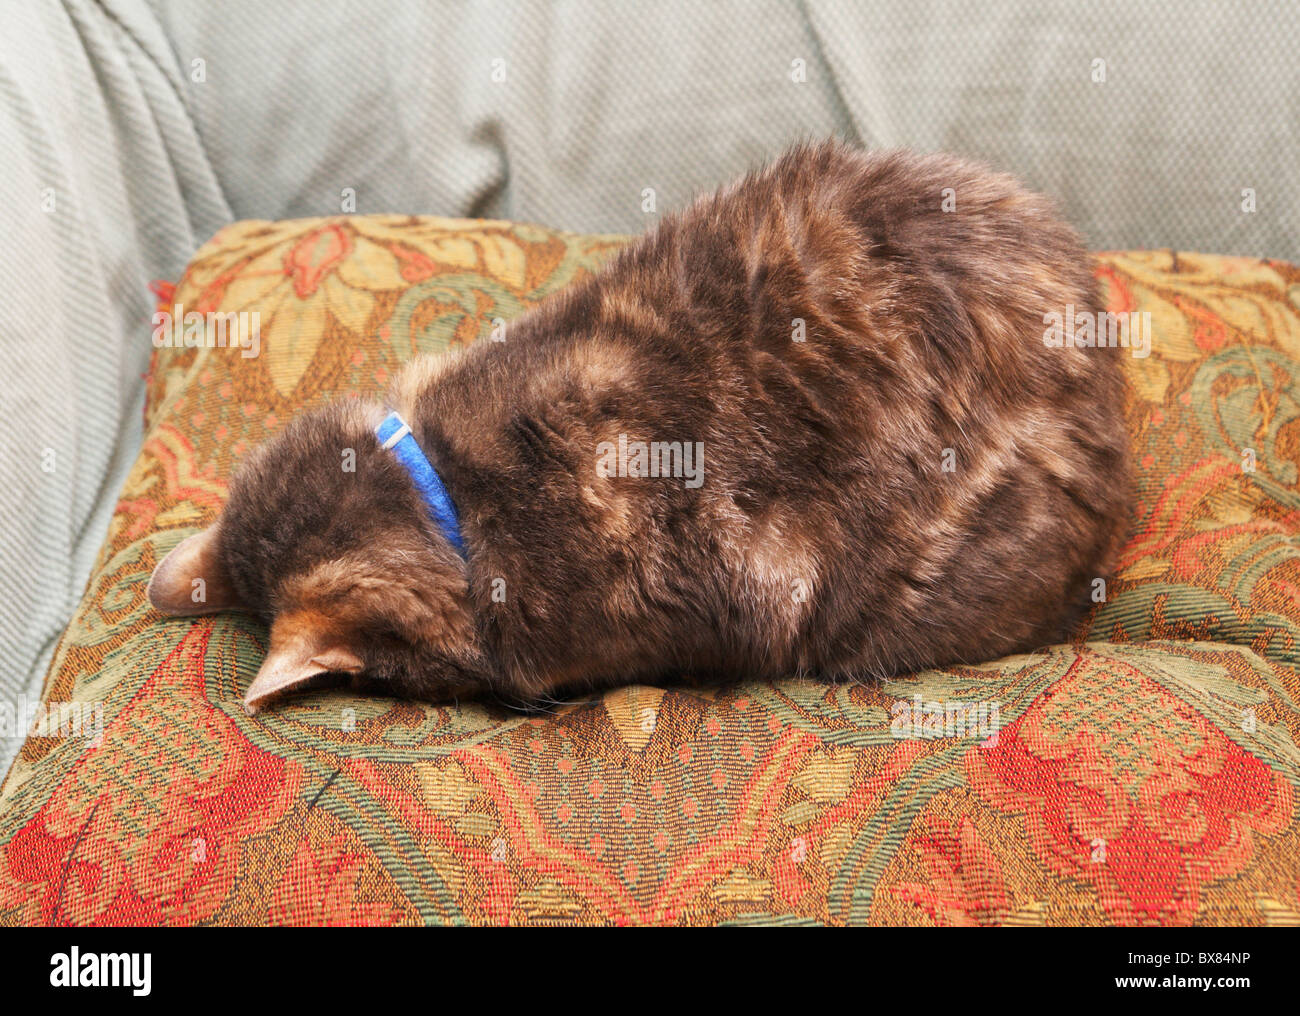 eine Katze versteckt sich vor der Welt durch Gesicht nach unten auf einem  Kissen schlafen Stockfotografie - Alamy